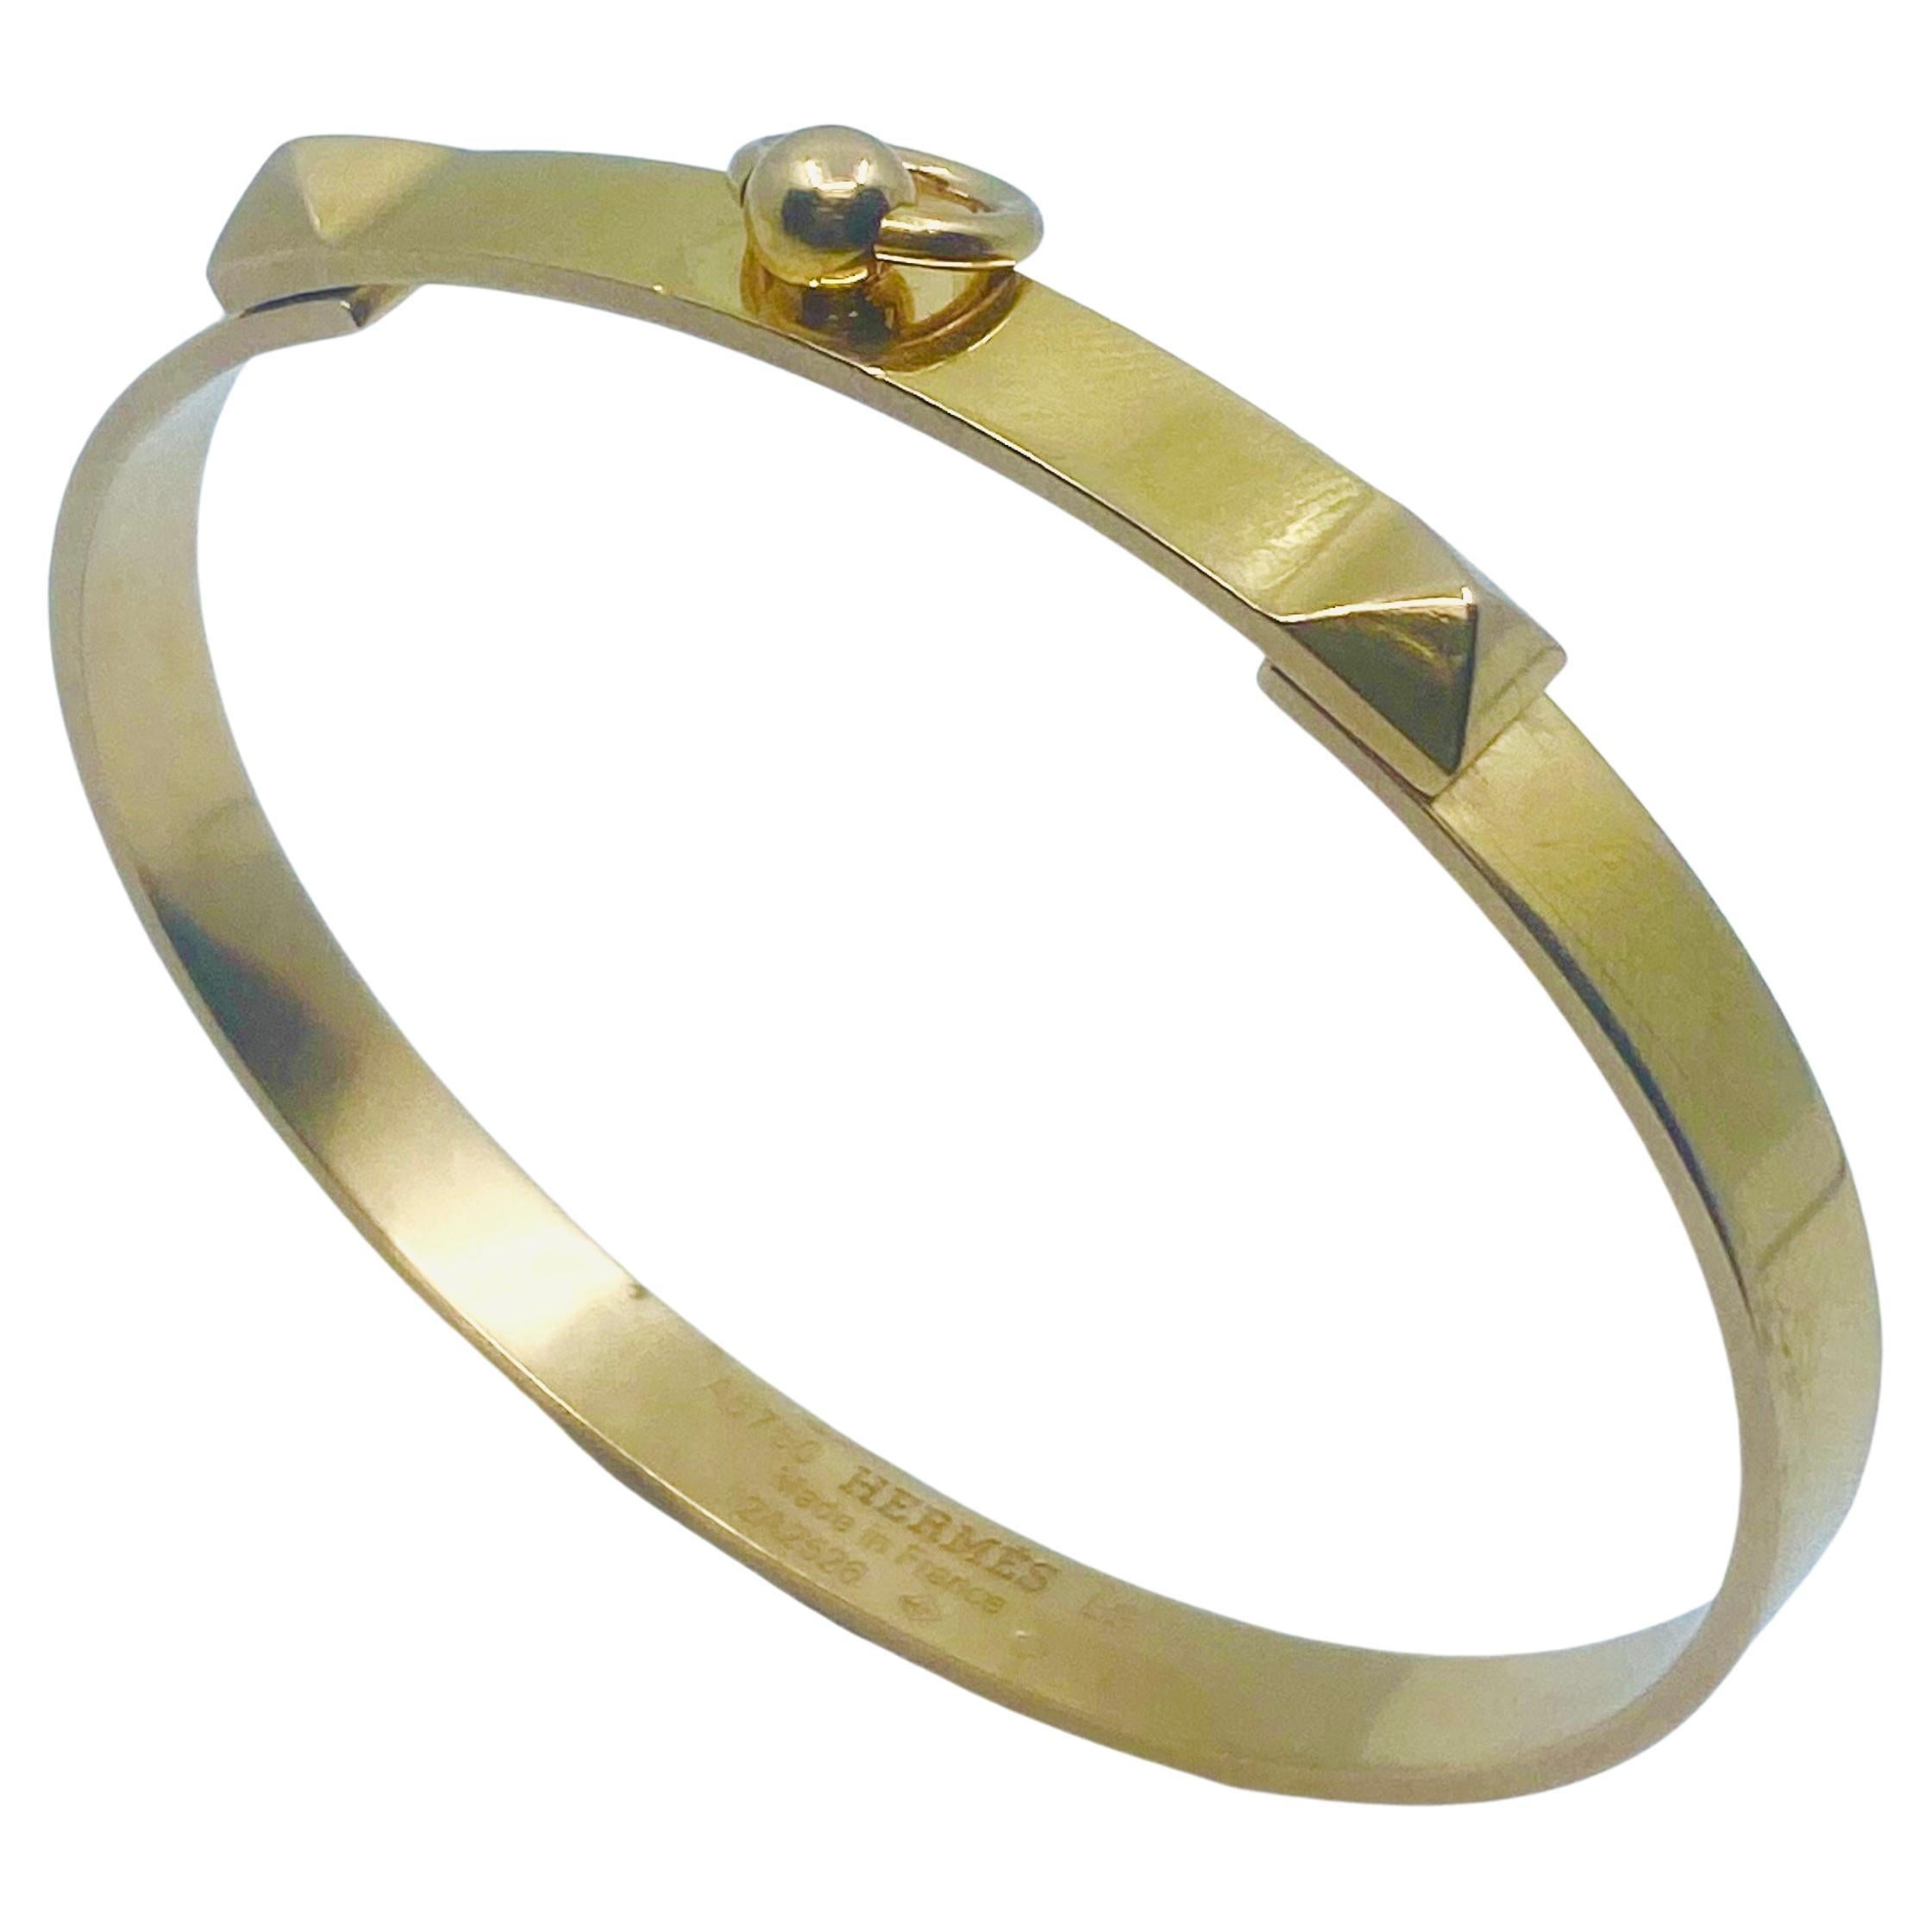 Hermes 18K Gold Bangle Bracelet